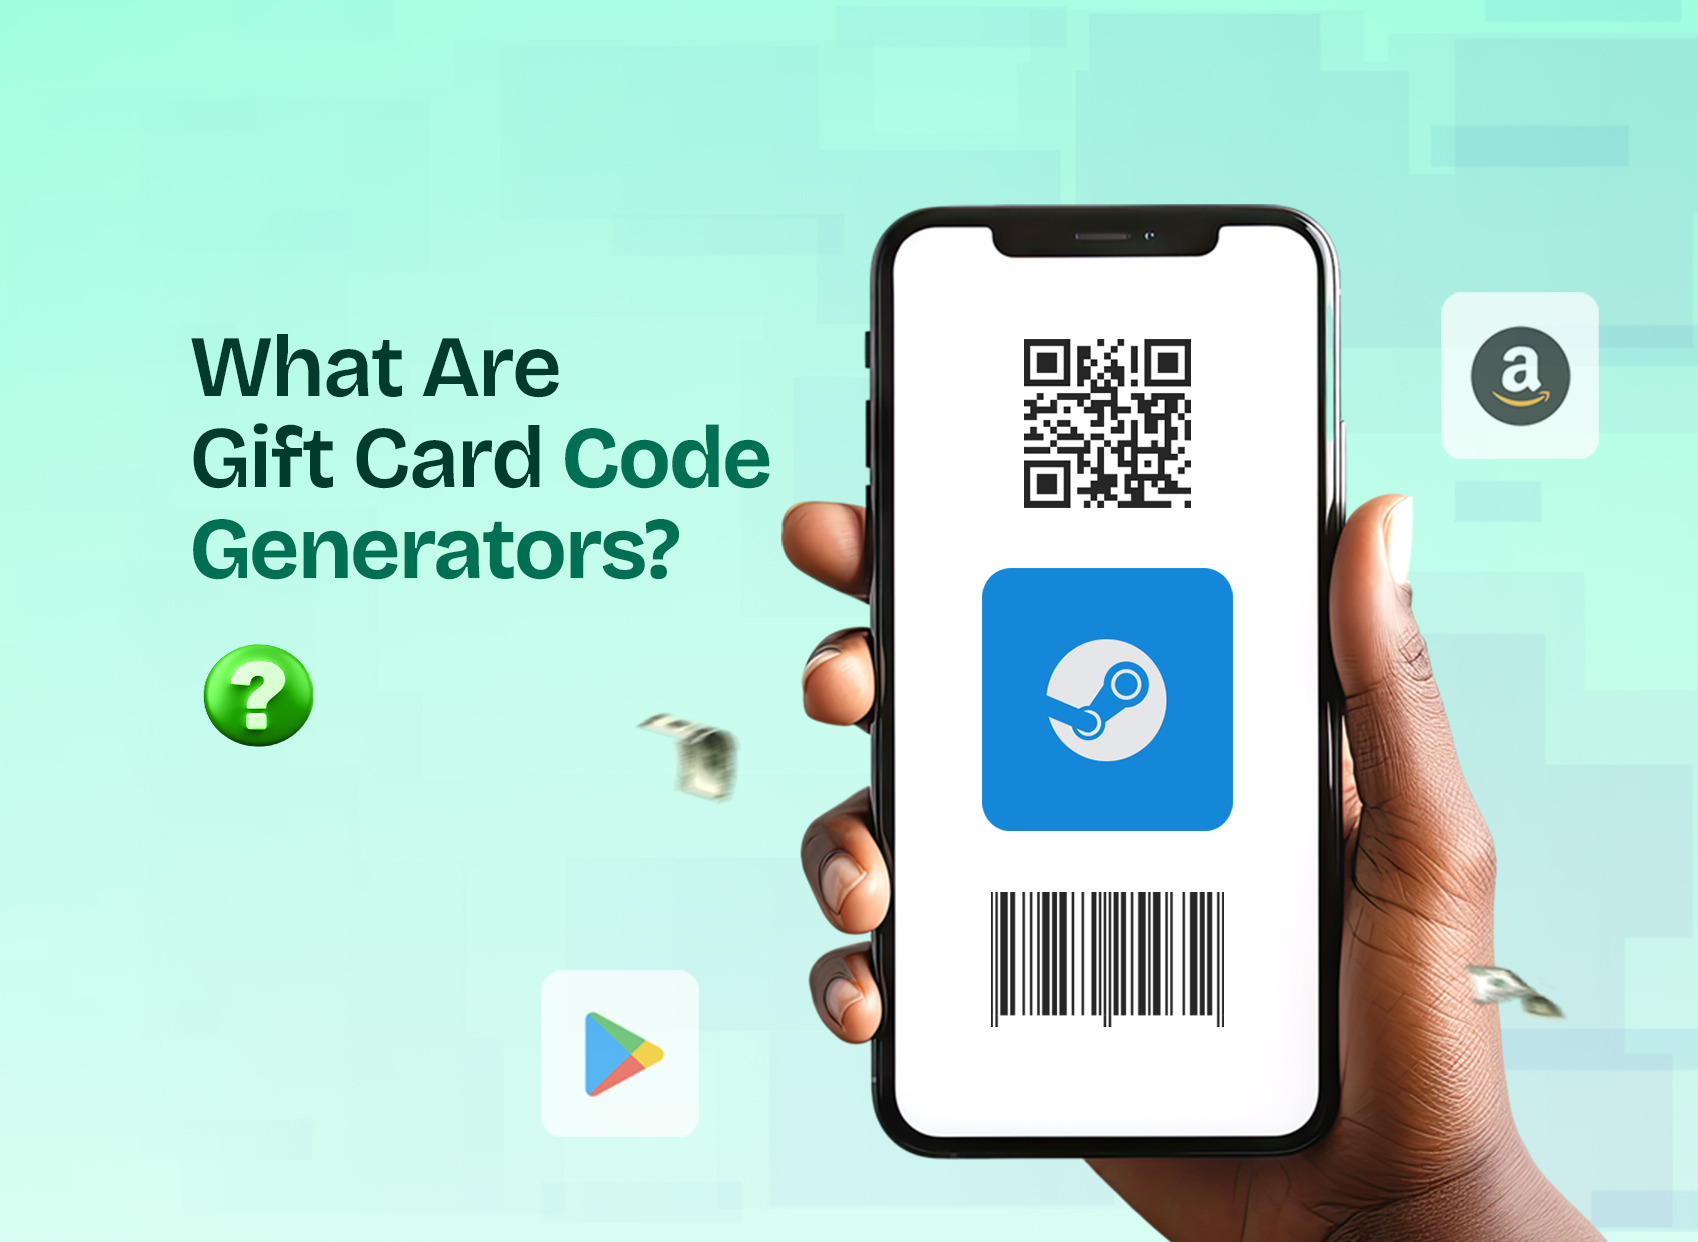 Gift Card Code Generators